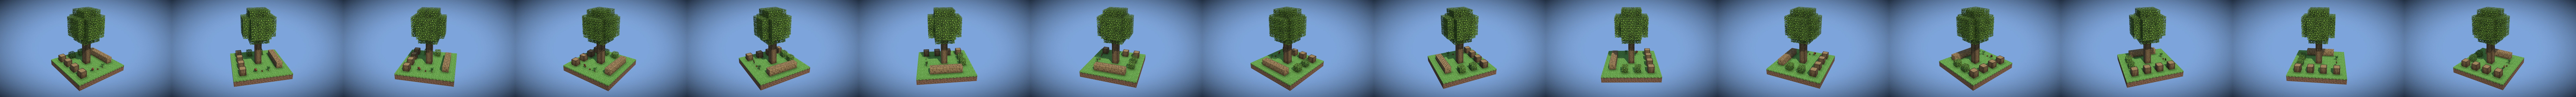 Minecraft Oak Wood Re Texture 32x Download Free 3d Model By Bjarne Kristensen Bjarnekristensen Af